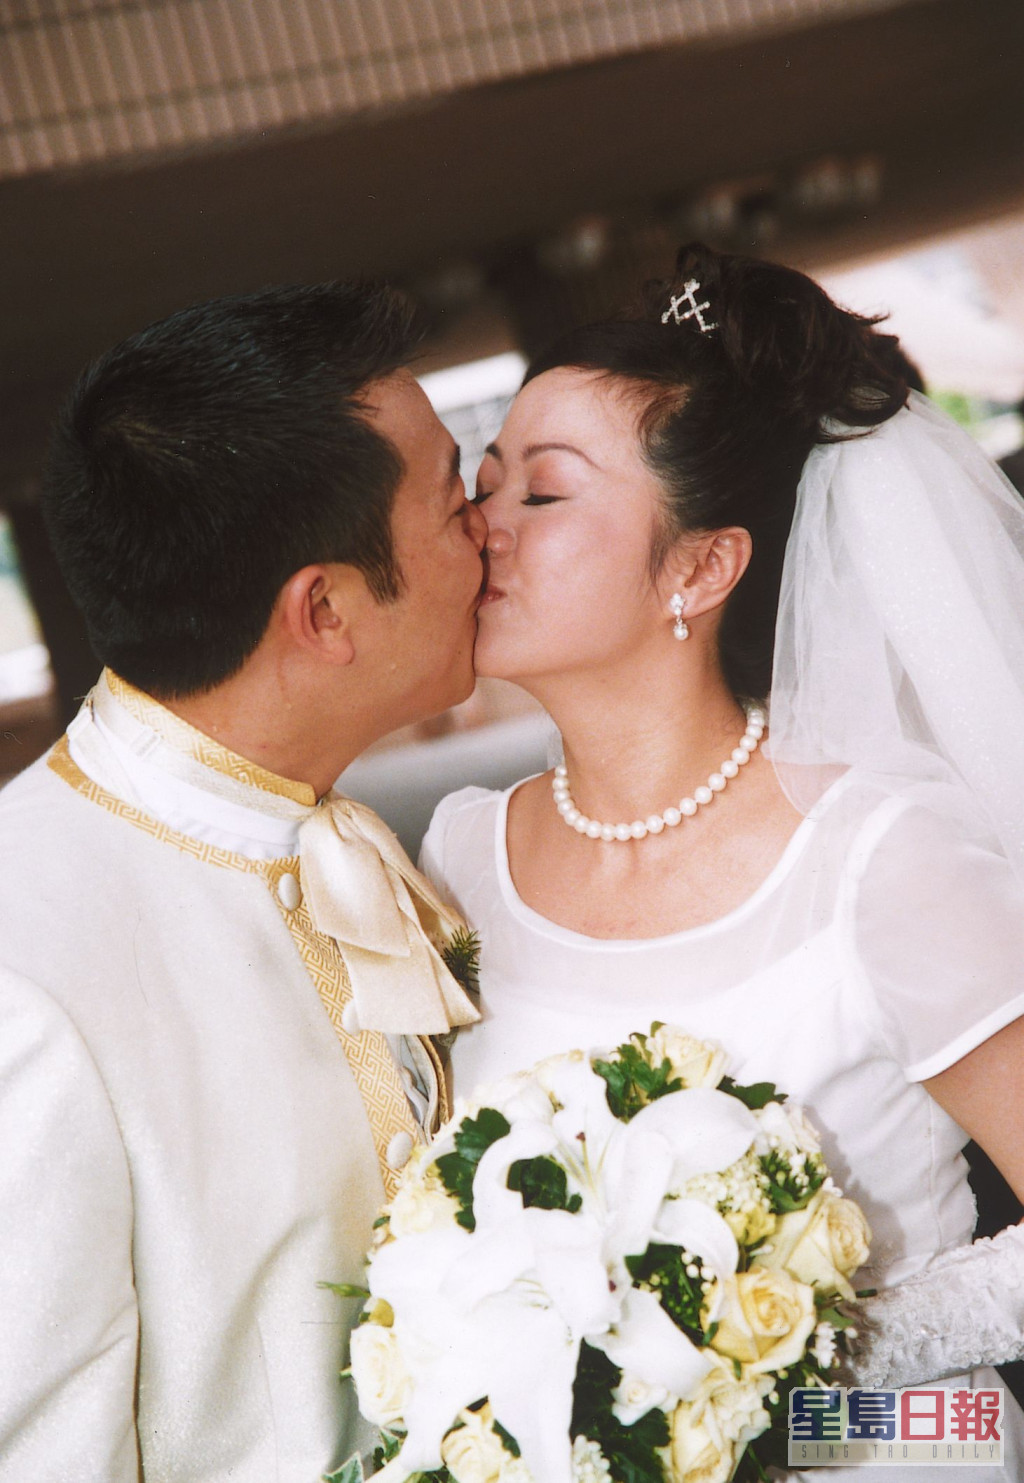 吴毅将于2003年娶唐丽球。